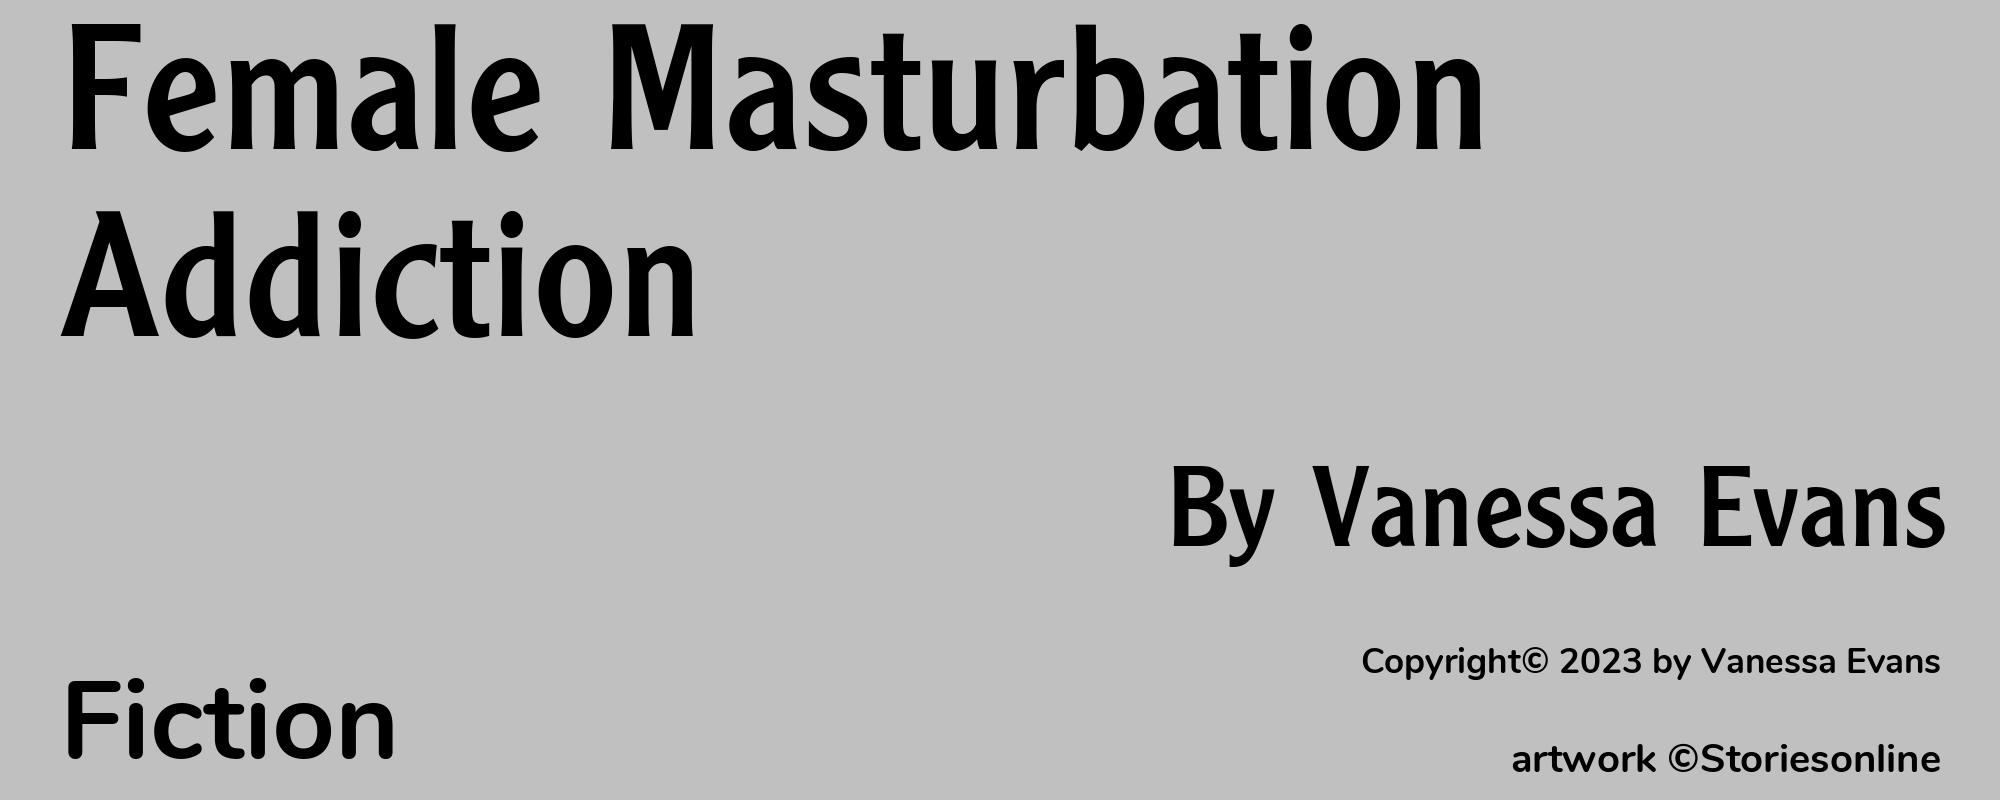 Female Masturbation Addiction - Cover